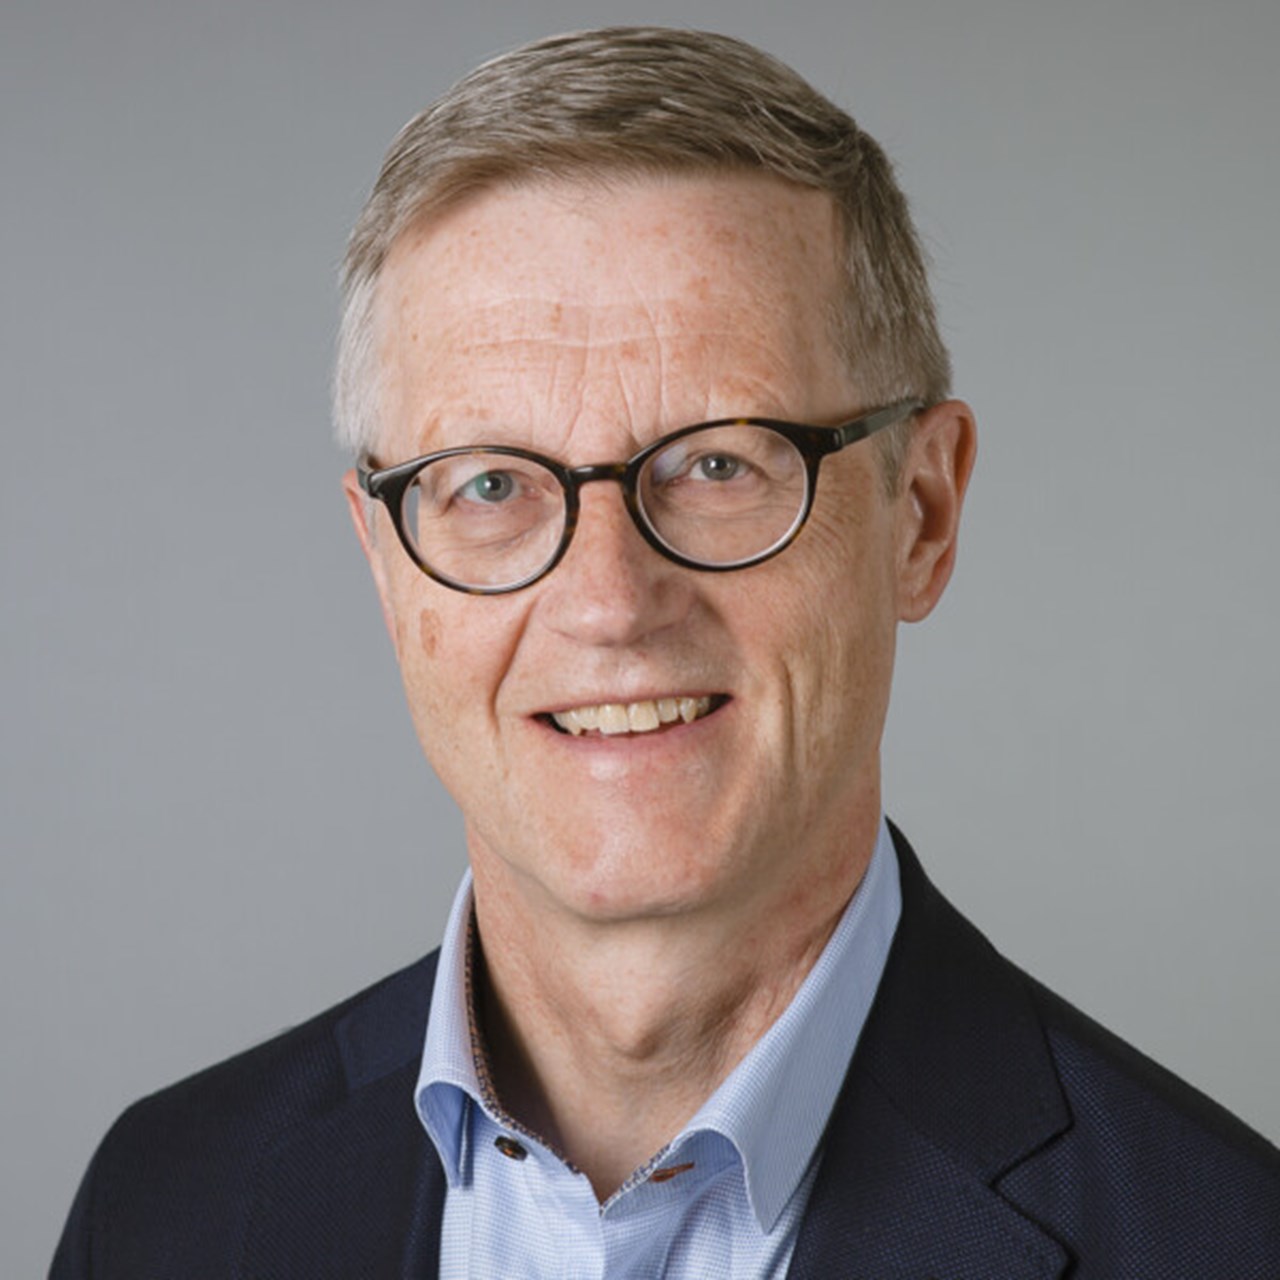 Porträtt av Olov Rolandsson, professor i allmänmedicin, Institutionen för folkhälsa och klinisk medicin, Umeå universitet.